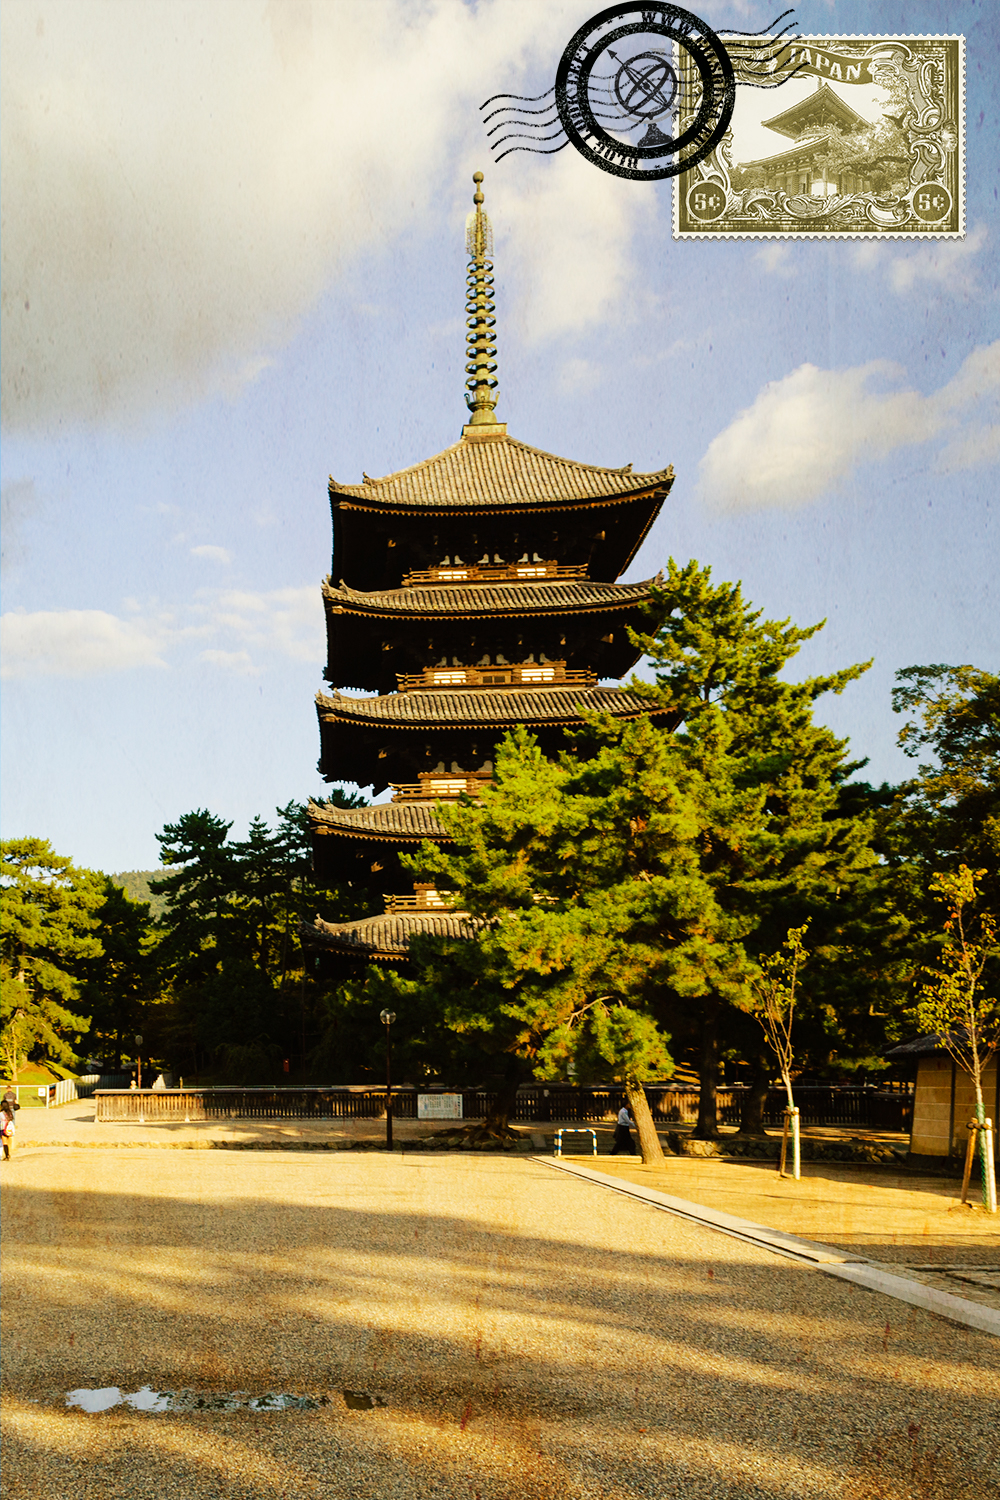 Five Story Pagoda in Nara